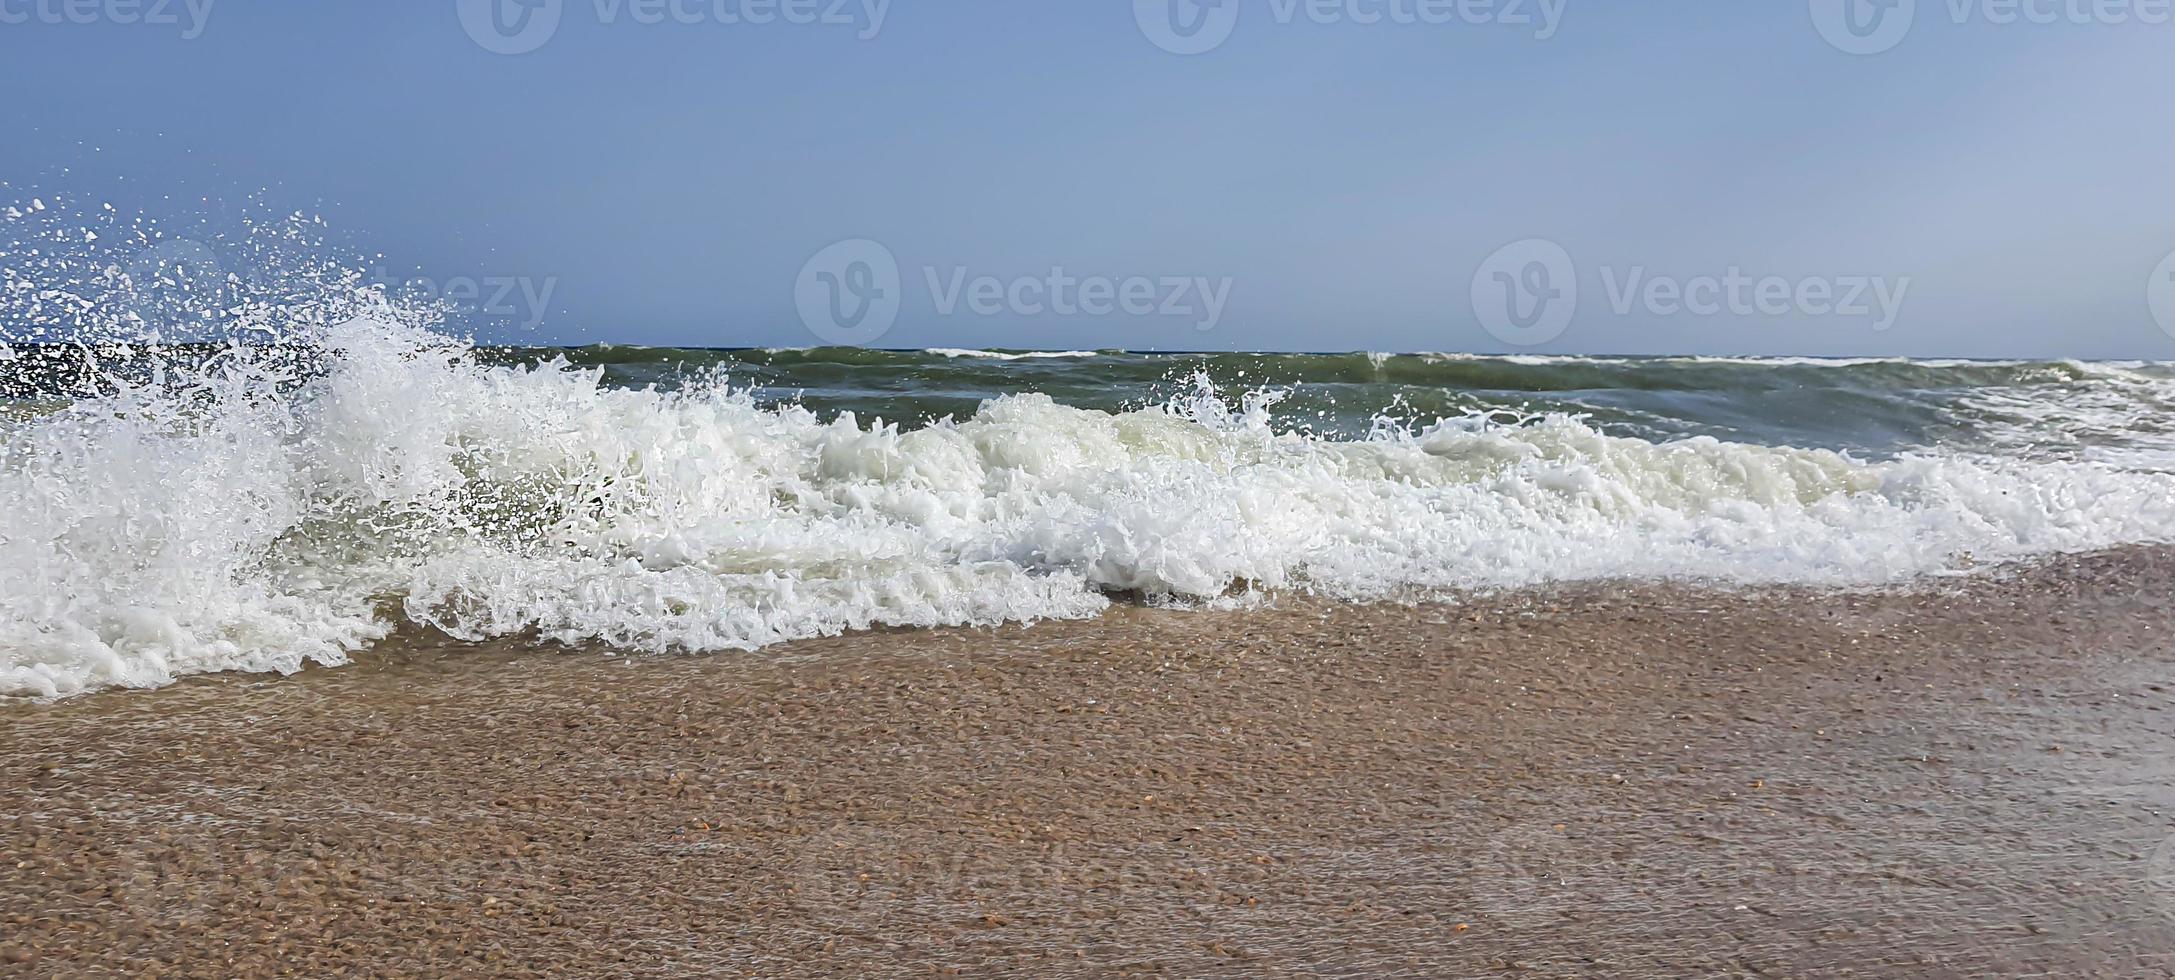 marina. color azul celeste del agua, olas espumosas en la orilla. foto